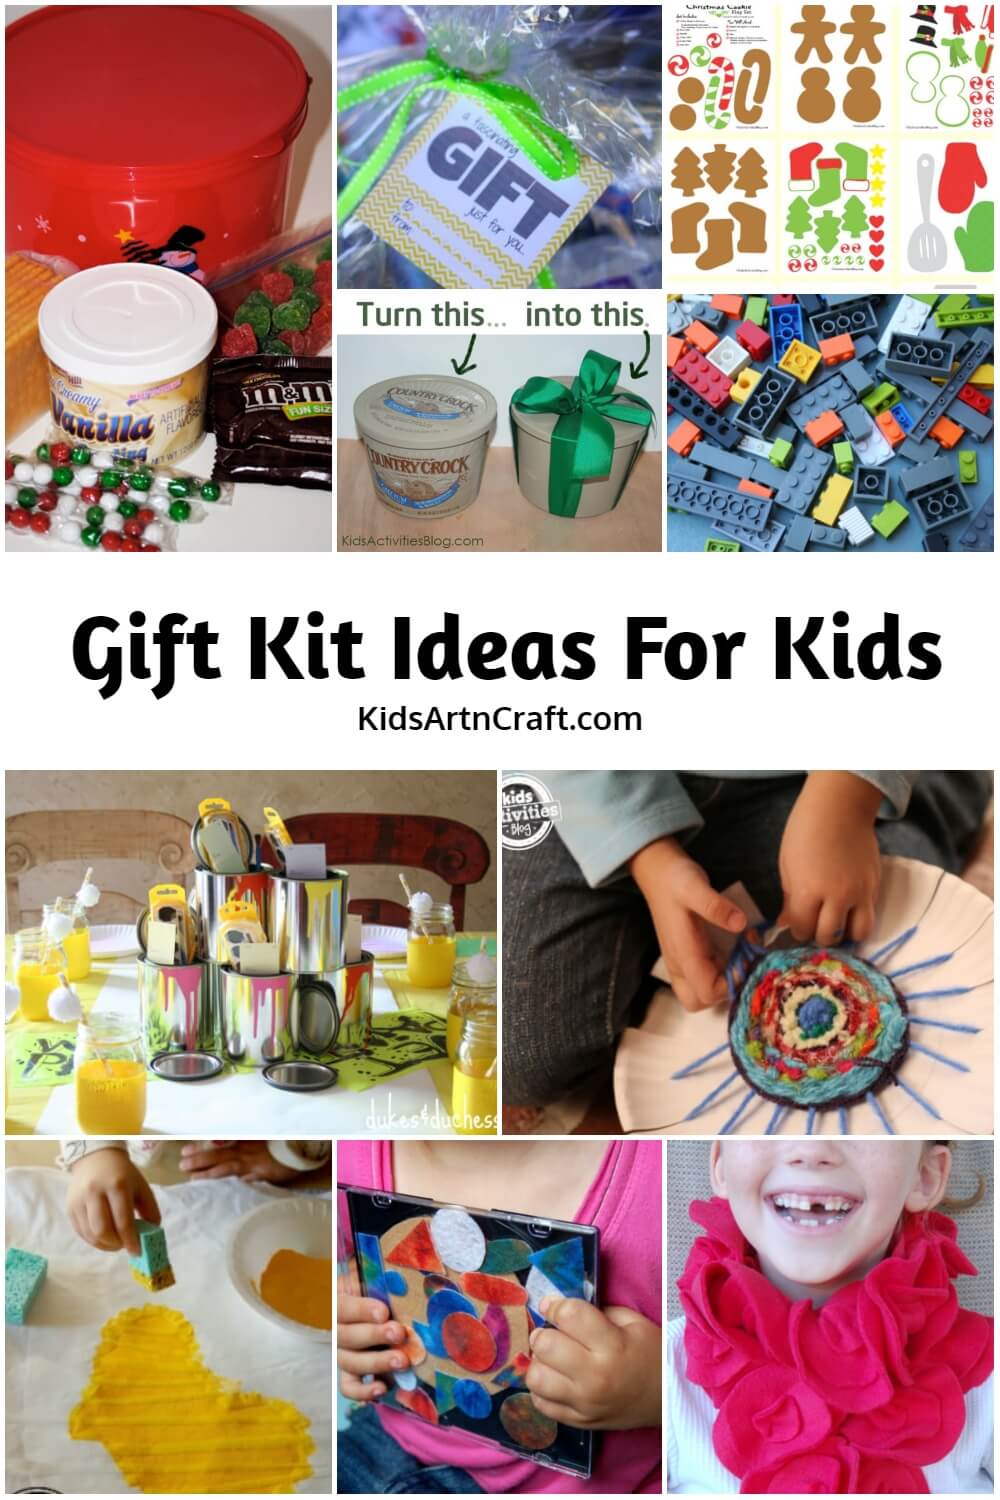 Gift Kit Ideas For Kids - Kids Art & Craft